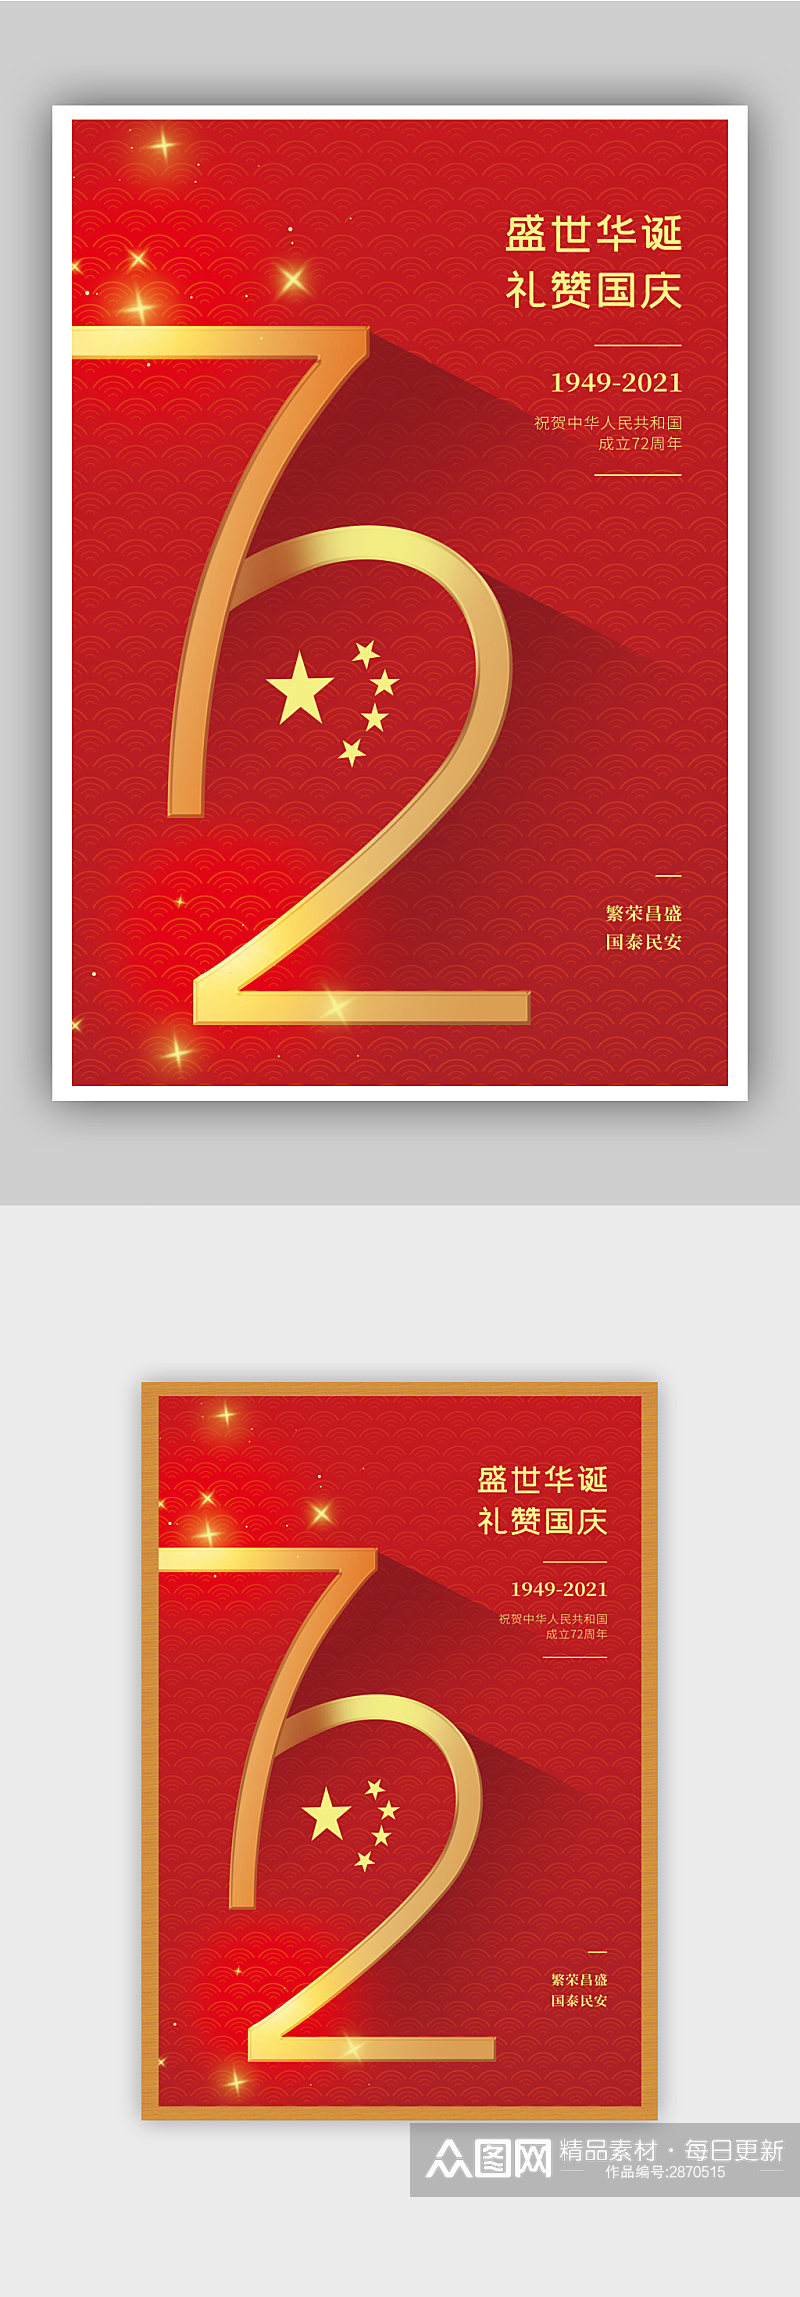 红色大气盛世华诞国庆节节日海报素材